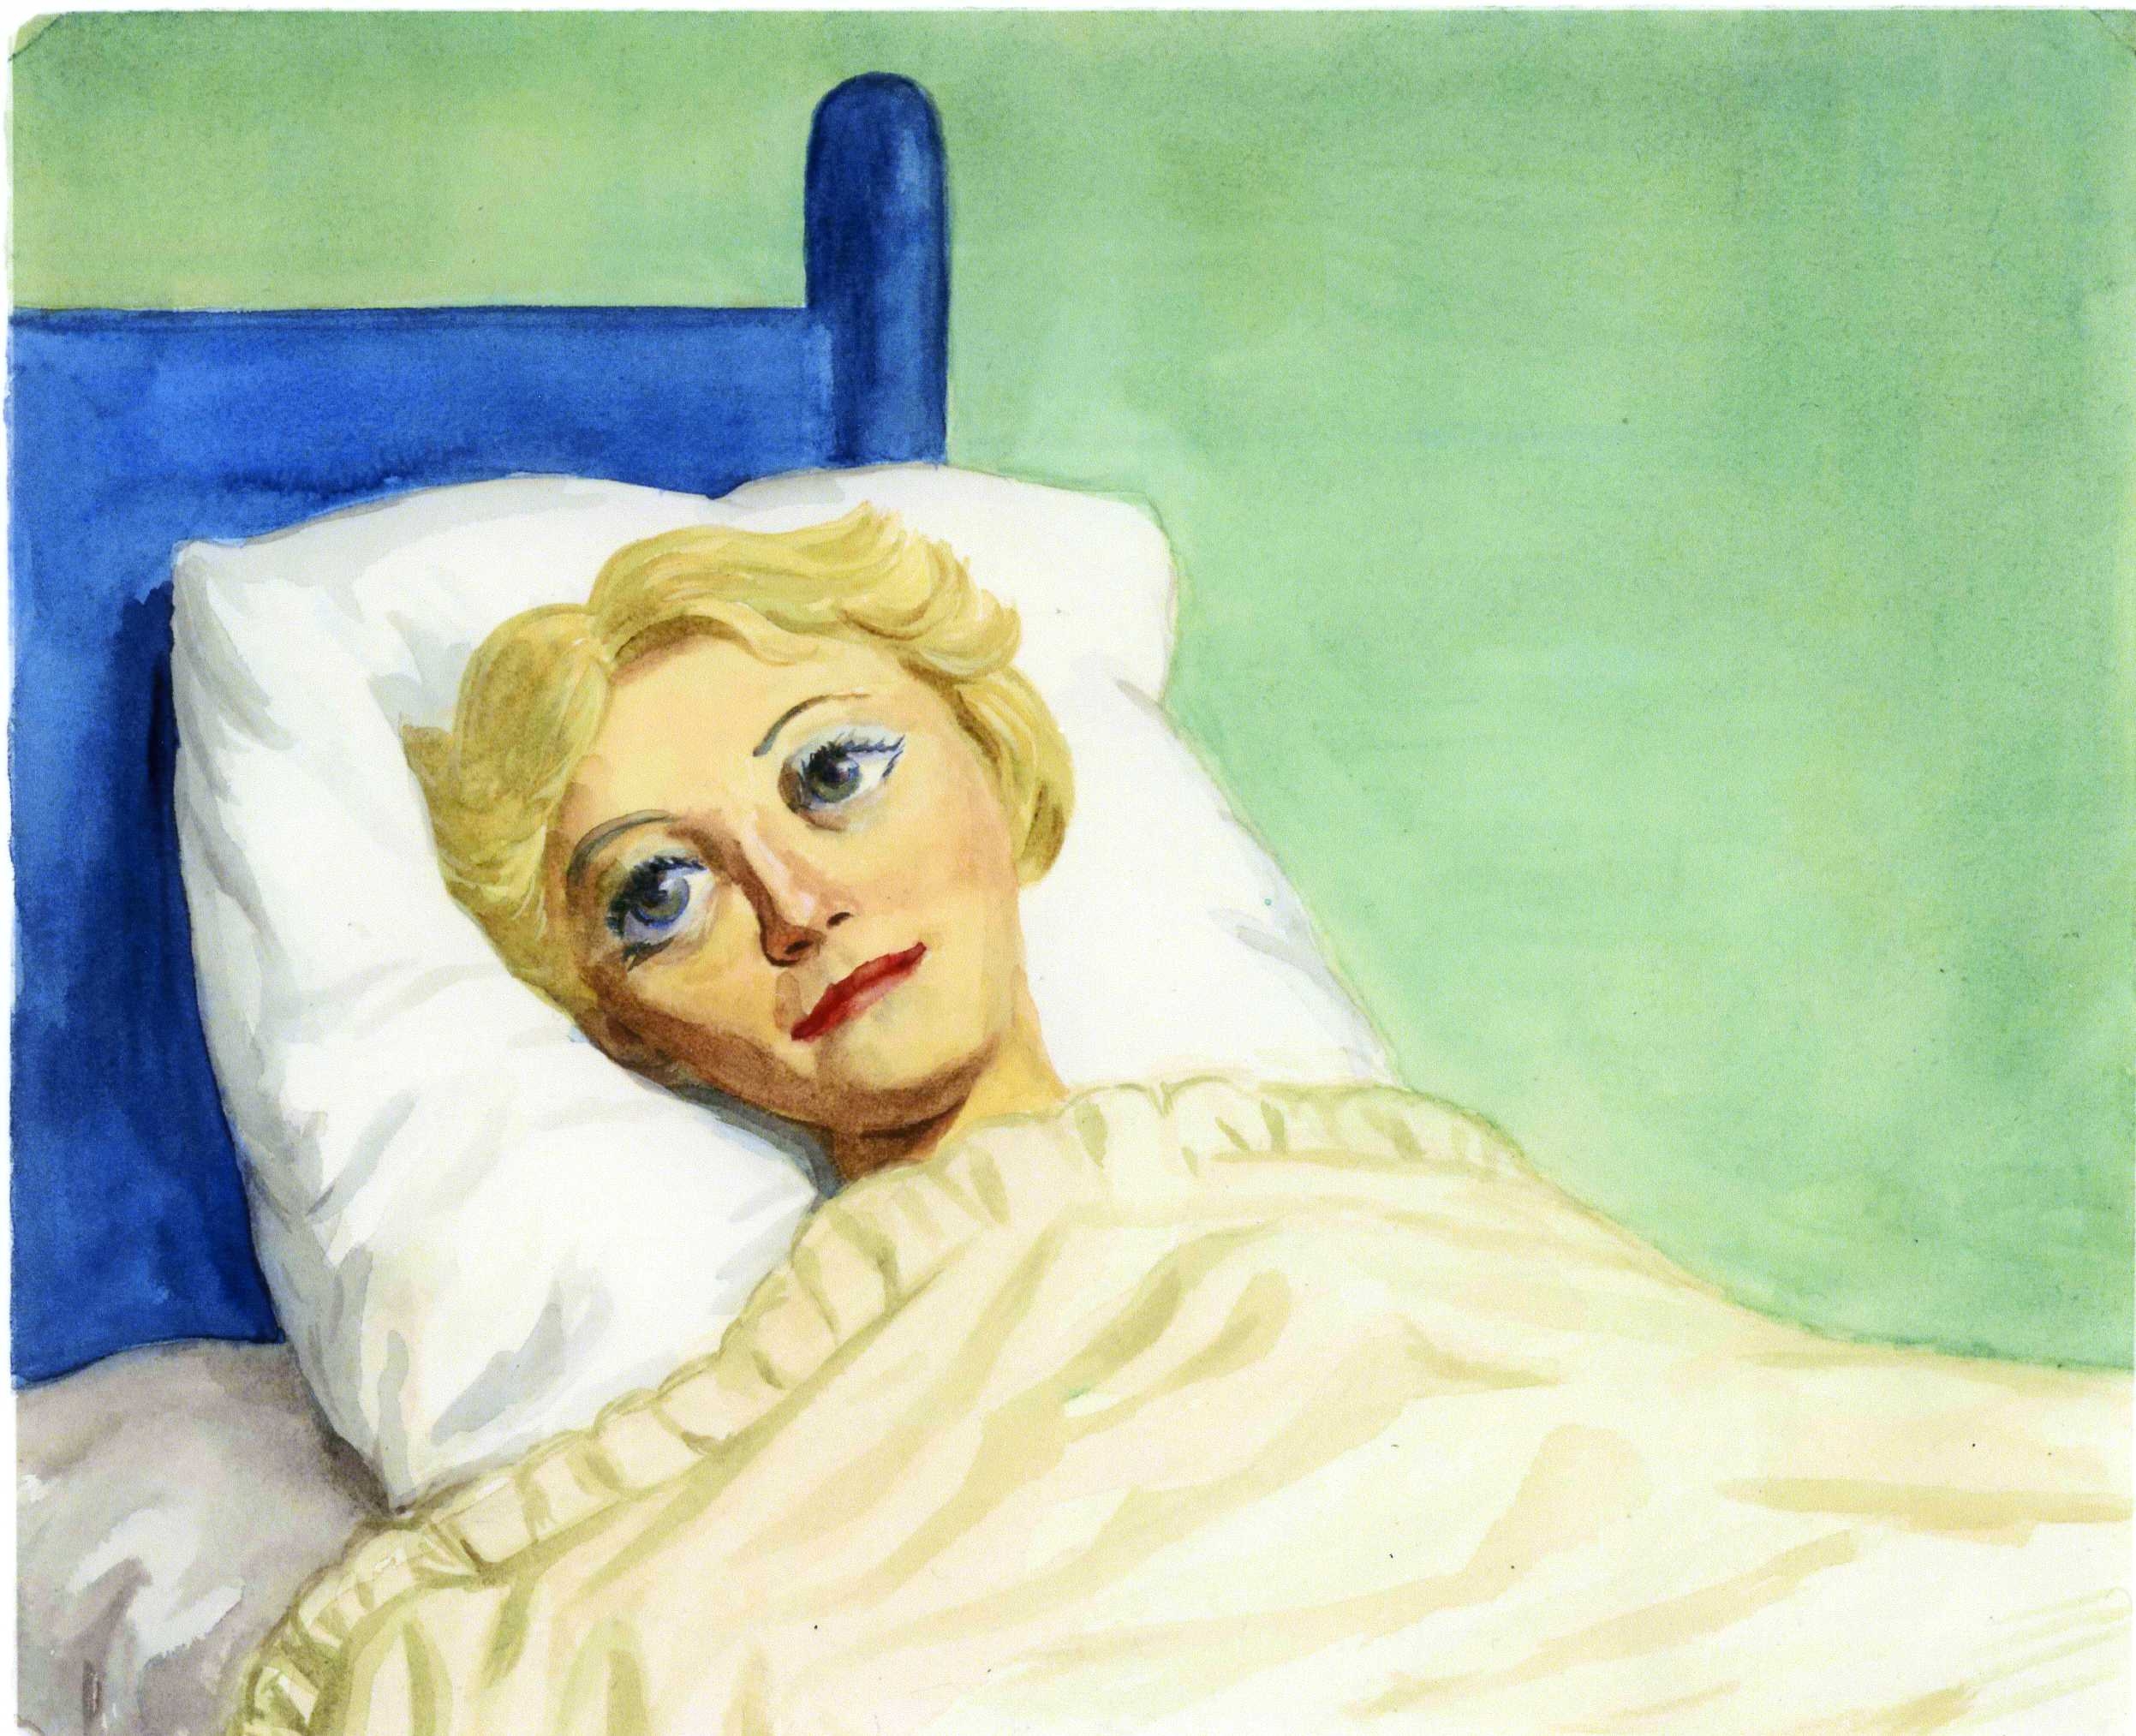 Girl in Bed, 1994